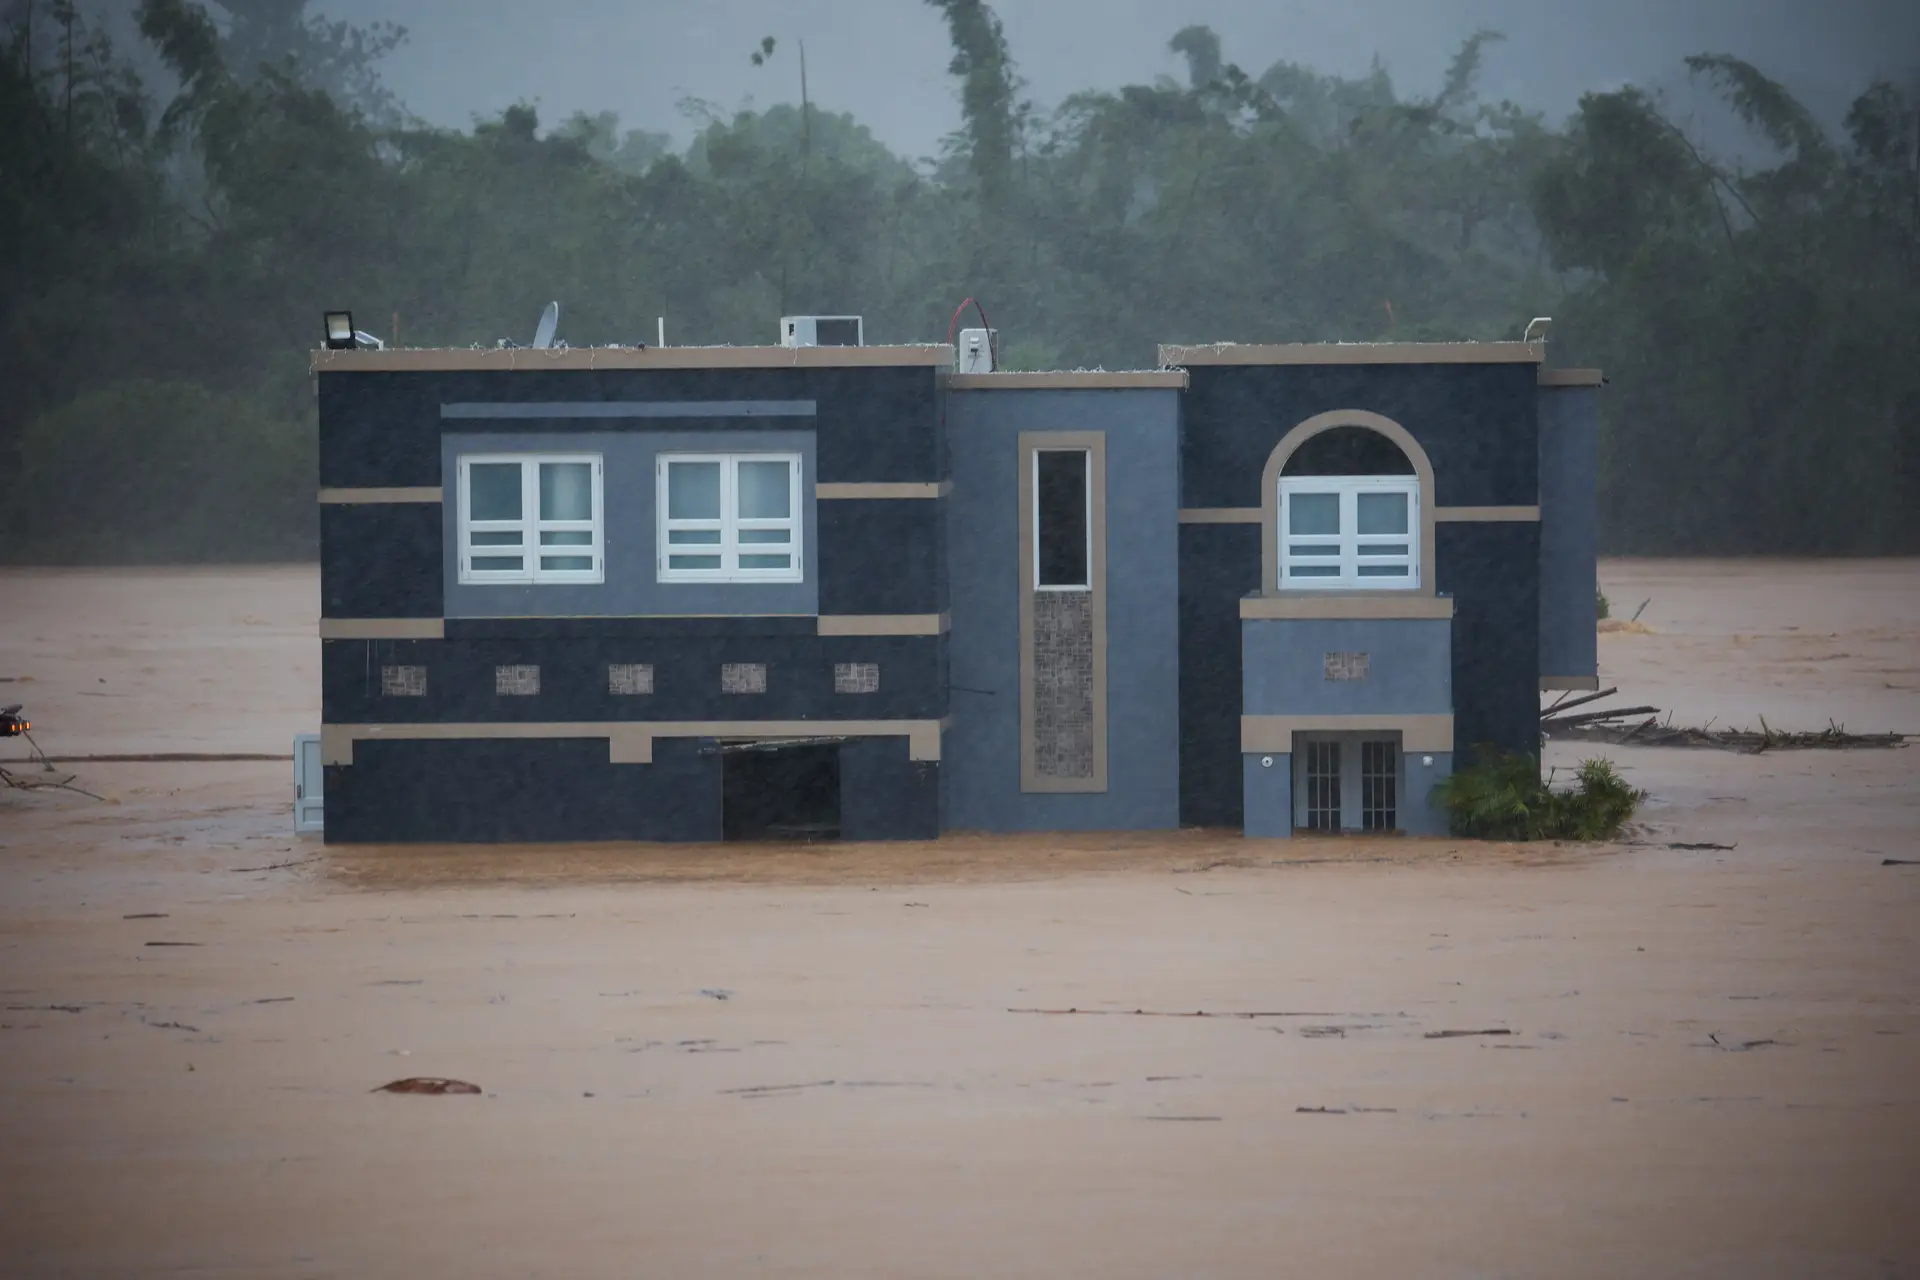 Casa inundada com a passagem do furacão Fiona em Cayey, Porto Rico. Três pessoas estavam dentro de casa, mas foram resgatadas.